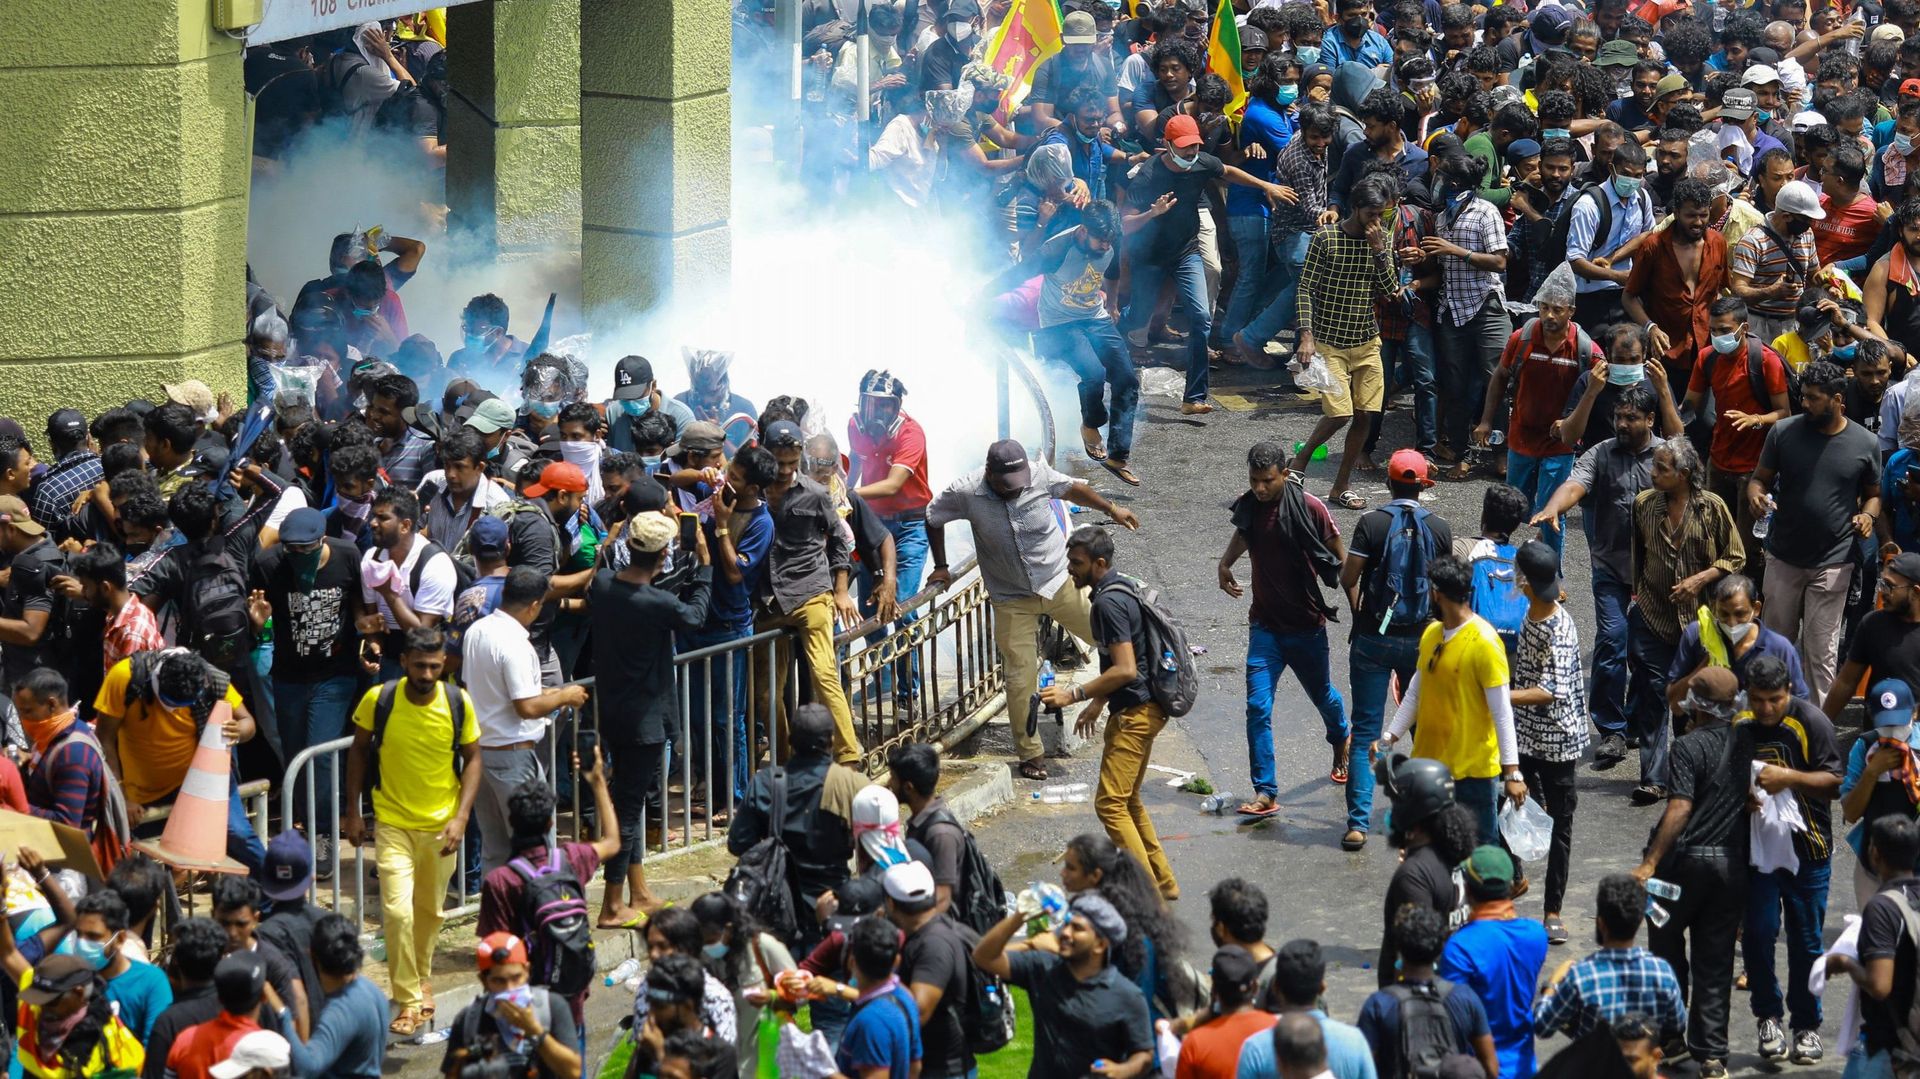 La police tire des grenades lacrymogènes pour disperser des manifestants demandant la démission du président sri-lankais Gotabaya dans une rue menant au palais présidentiel du Sri Lanka, à Colombo, le 9 juillet 2022. 